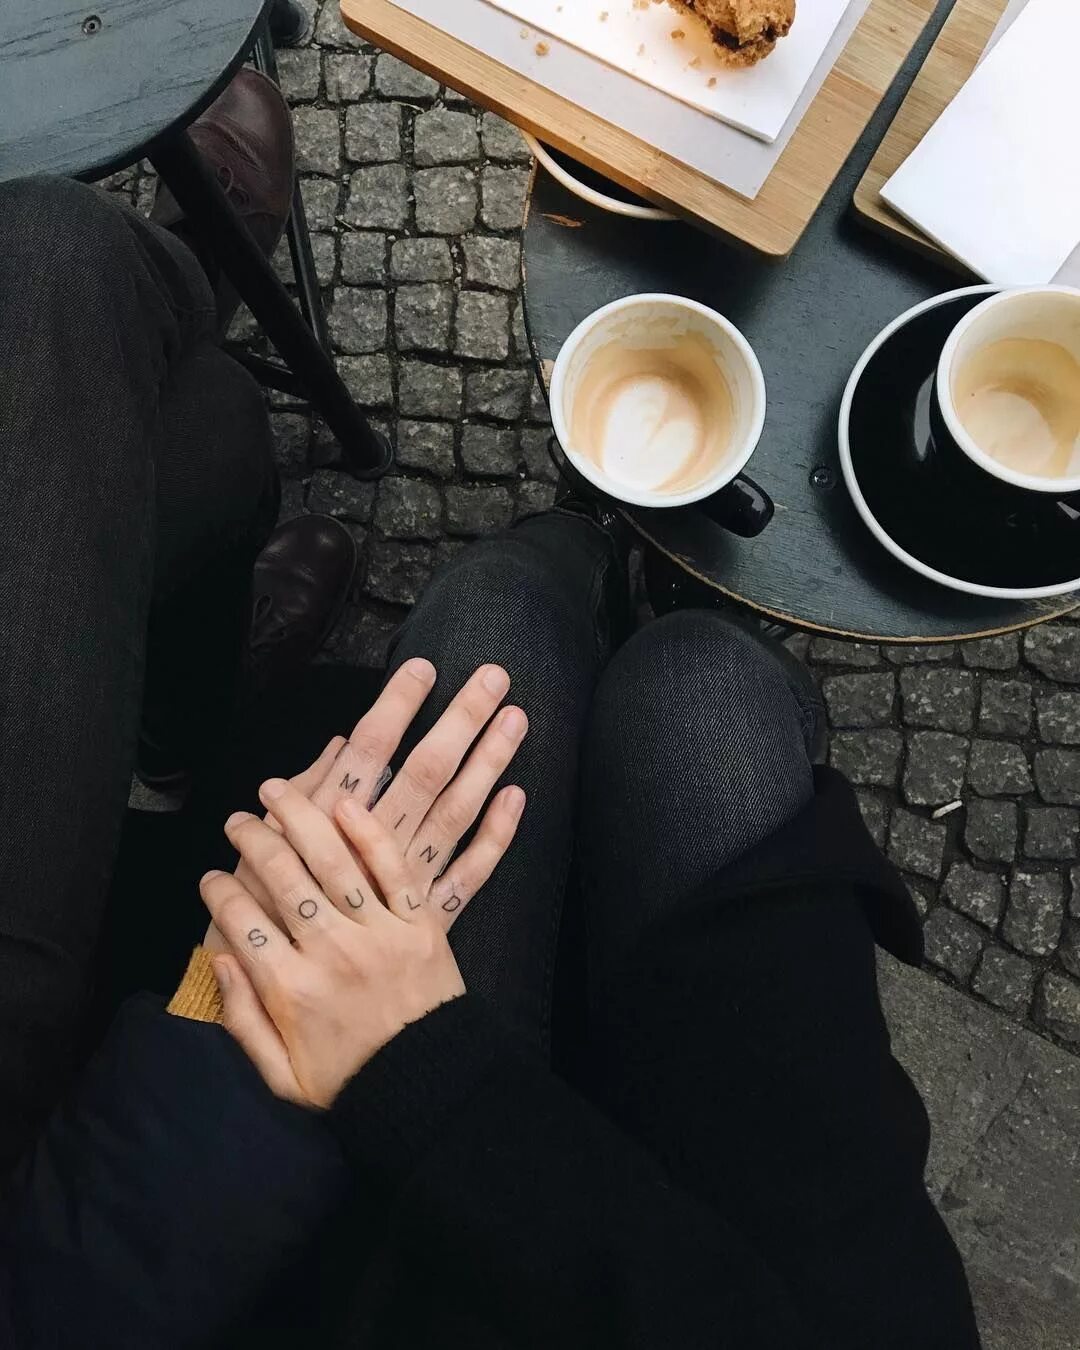 За столом фото без лиц. Кофе в руках. Девушка в кофейне без лица. Девушка с кофе в руках. Мужская рука с кофе.